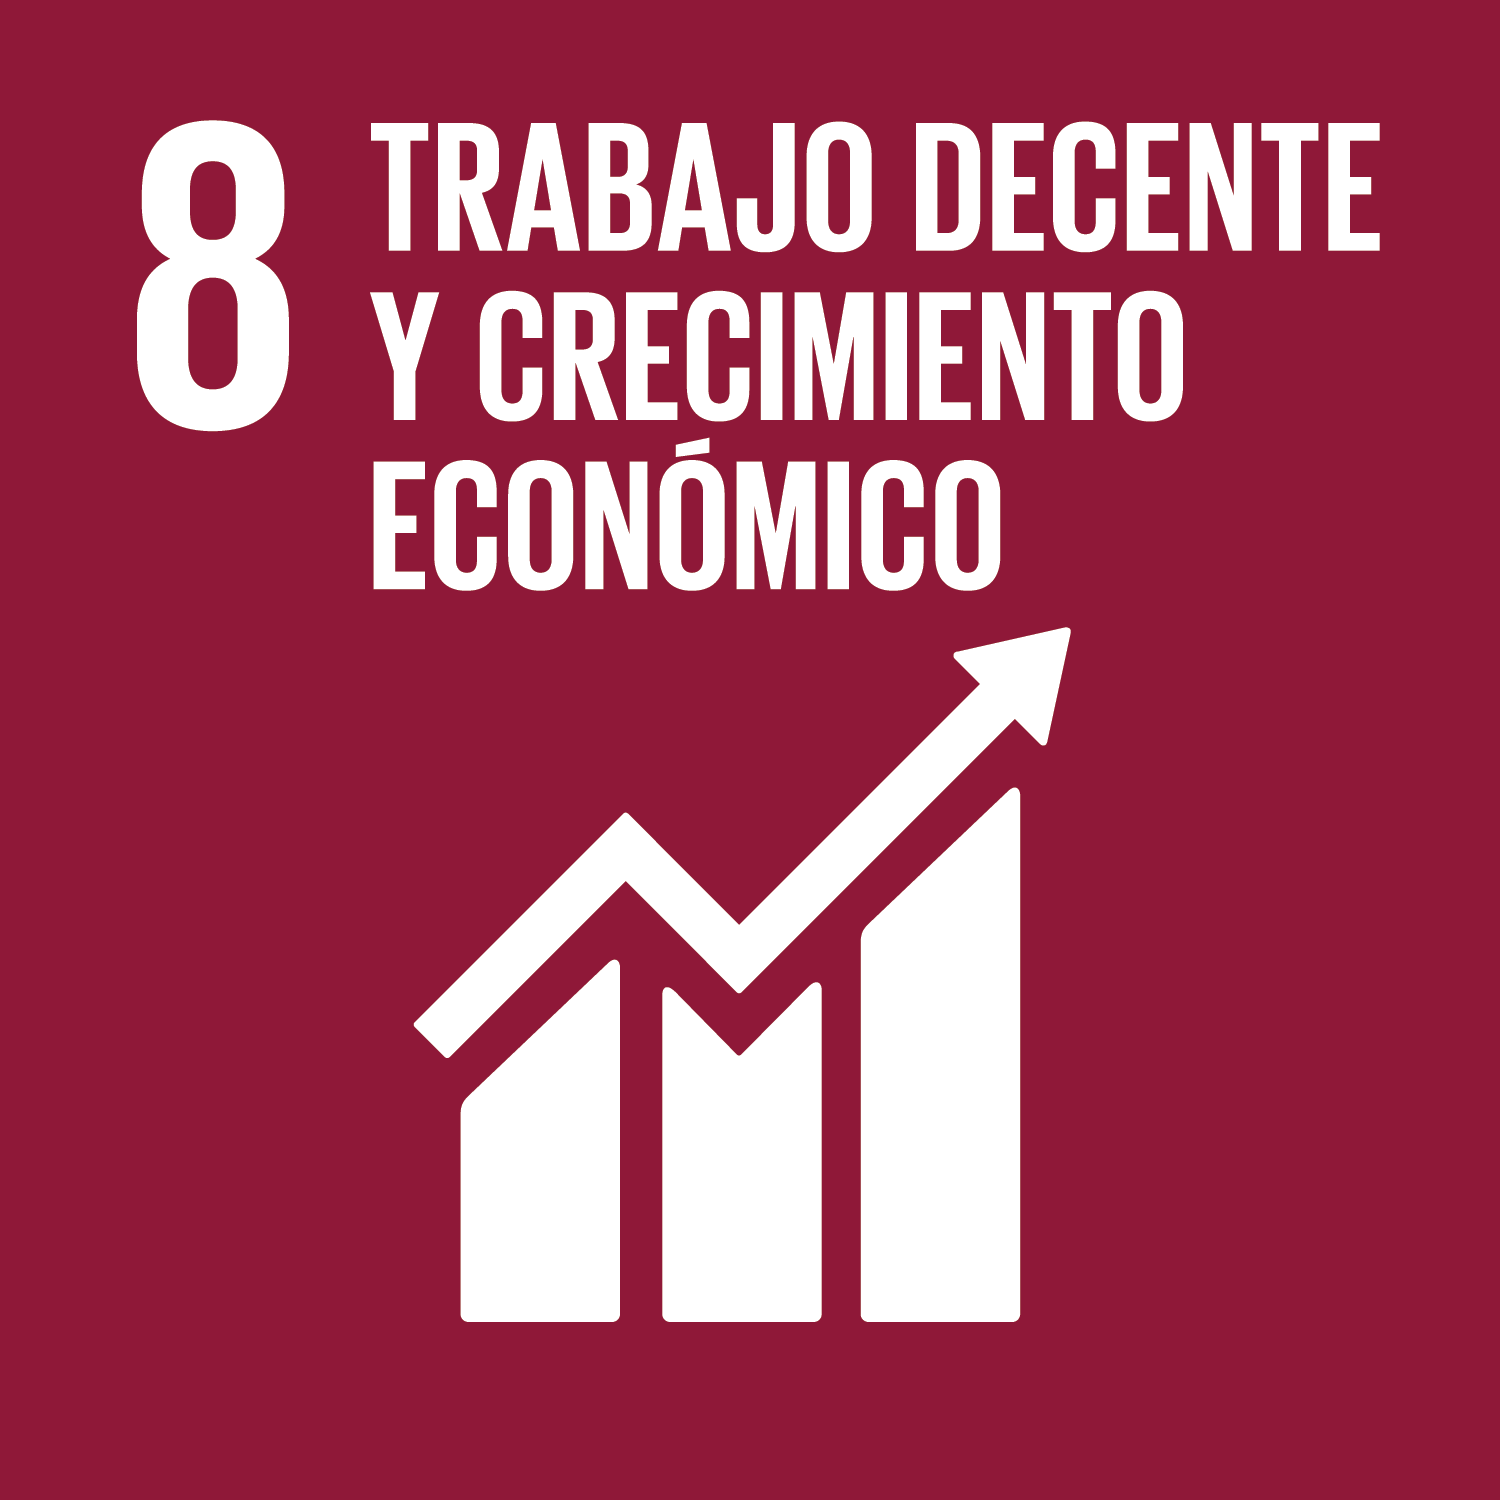 Los Objetivos de Desarrollo Sostenible - Promover el crecimiento económico sostenido, inclusivo y sostenible, el empleo pleno productivo y el trabajo decente para todos.